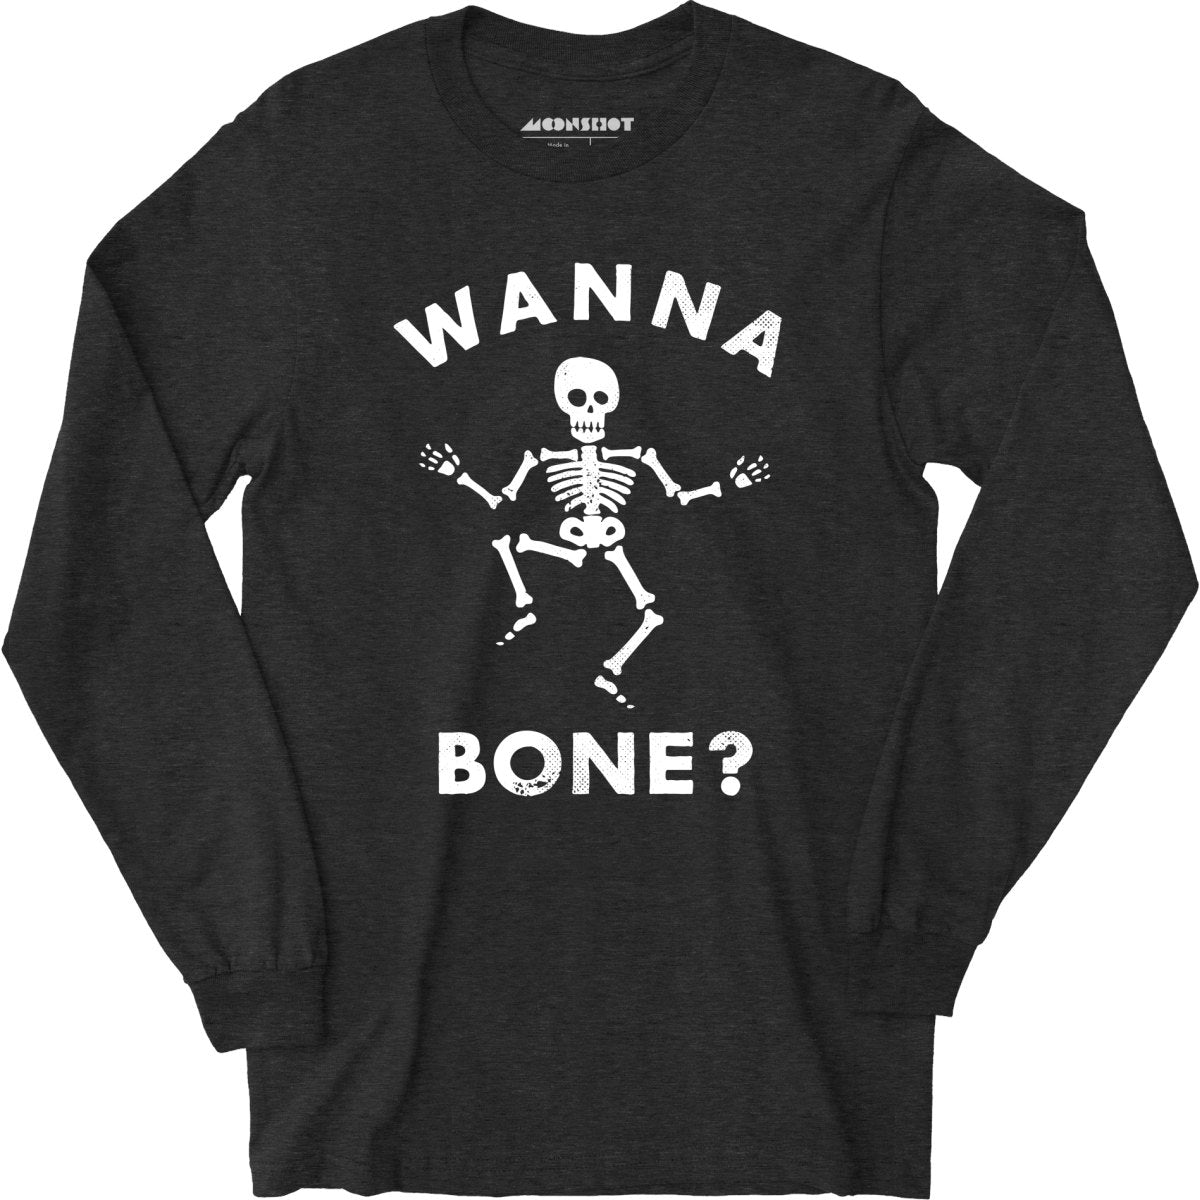 Wanna Bone? - Long Sleeve T-Shirt